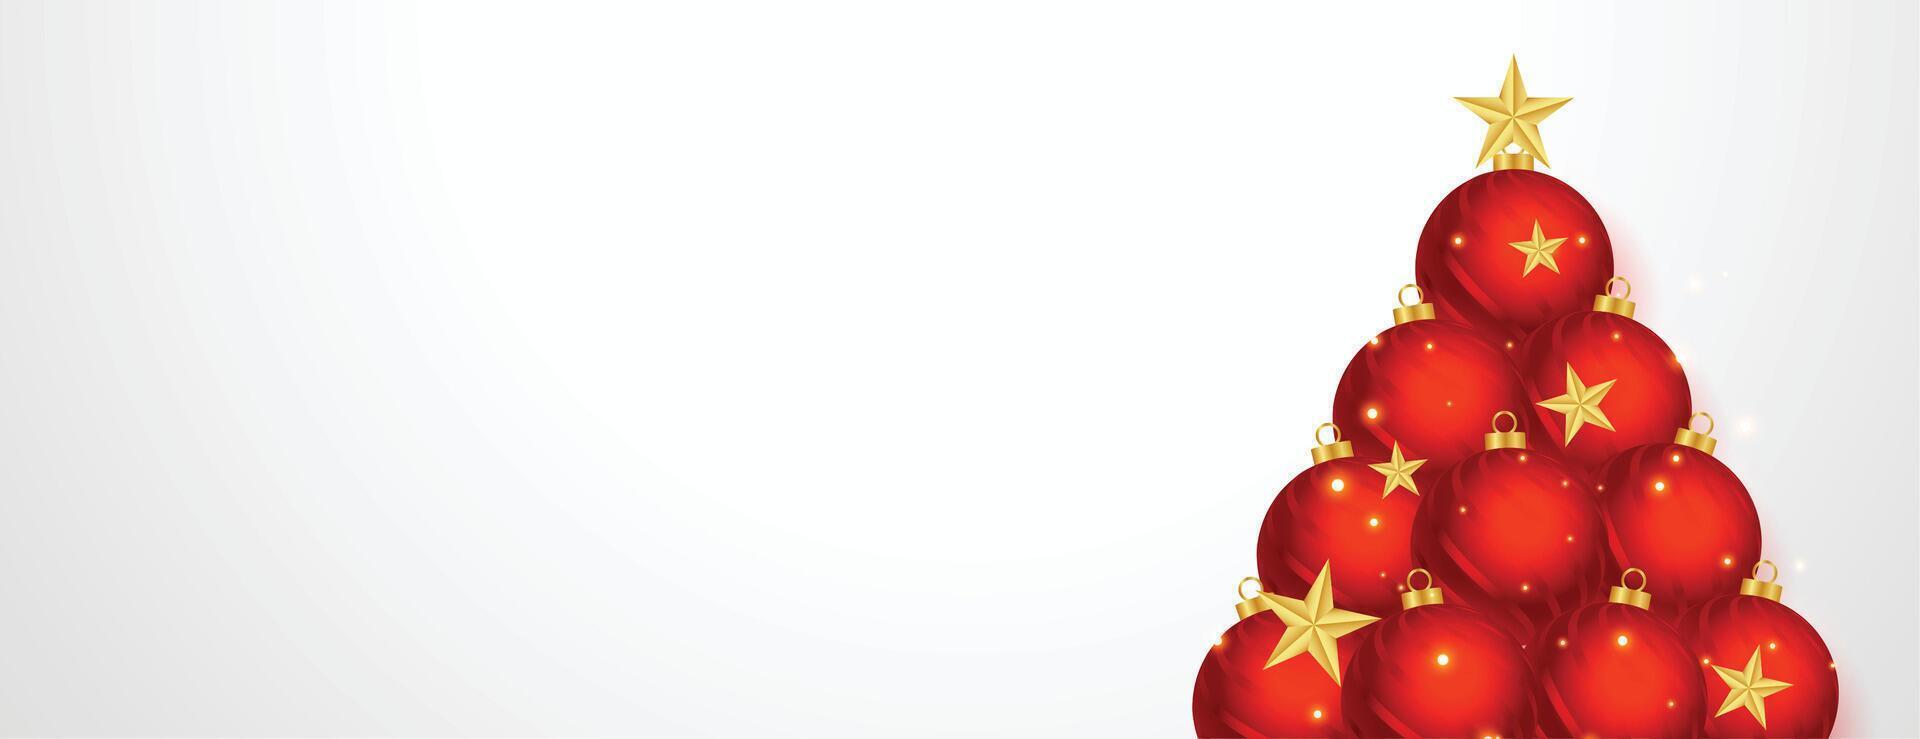 creatief Kerstmis boom gemaakt met Kerstmis bal en sterren vector